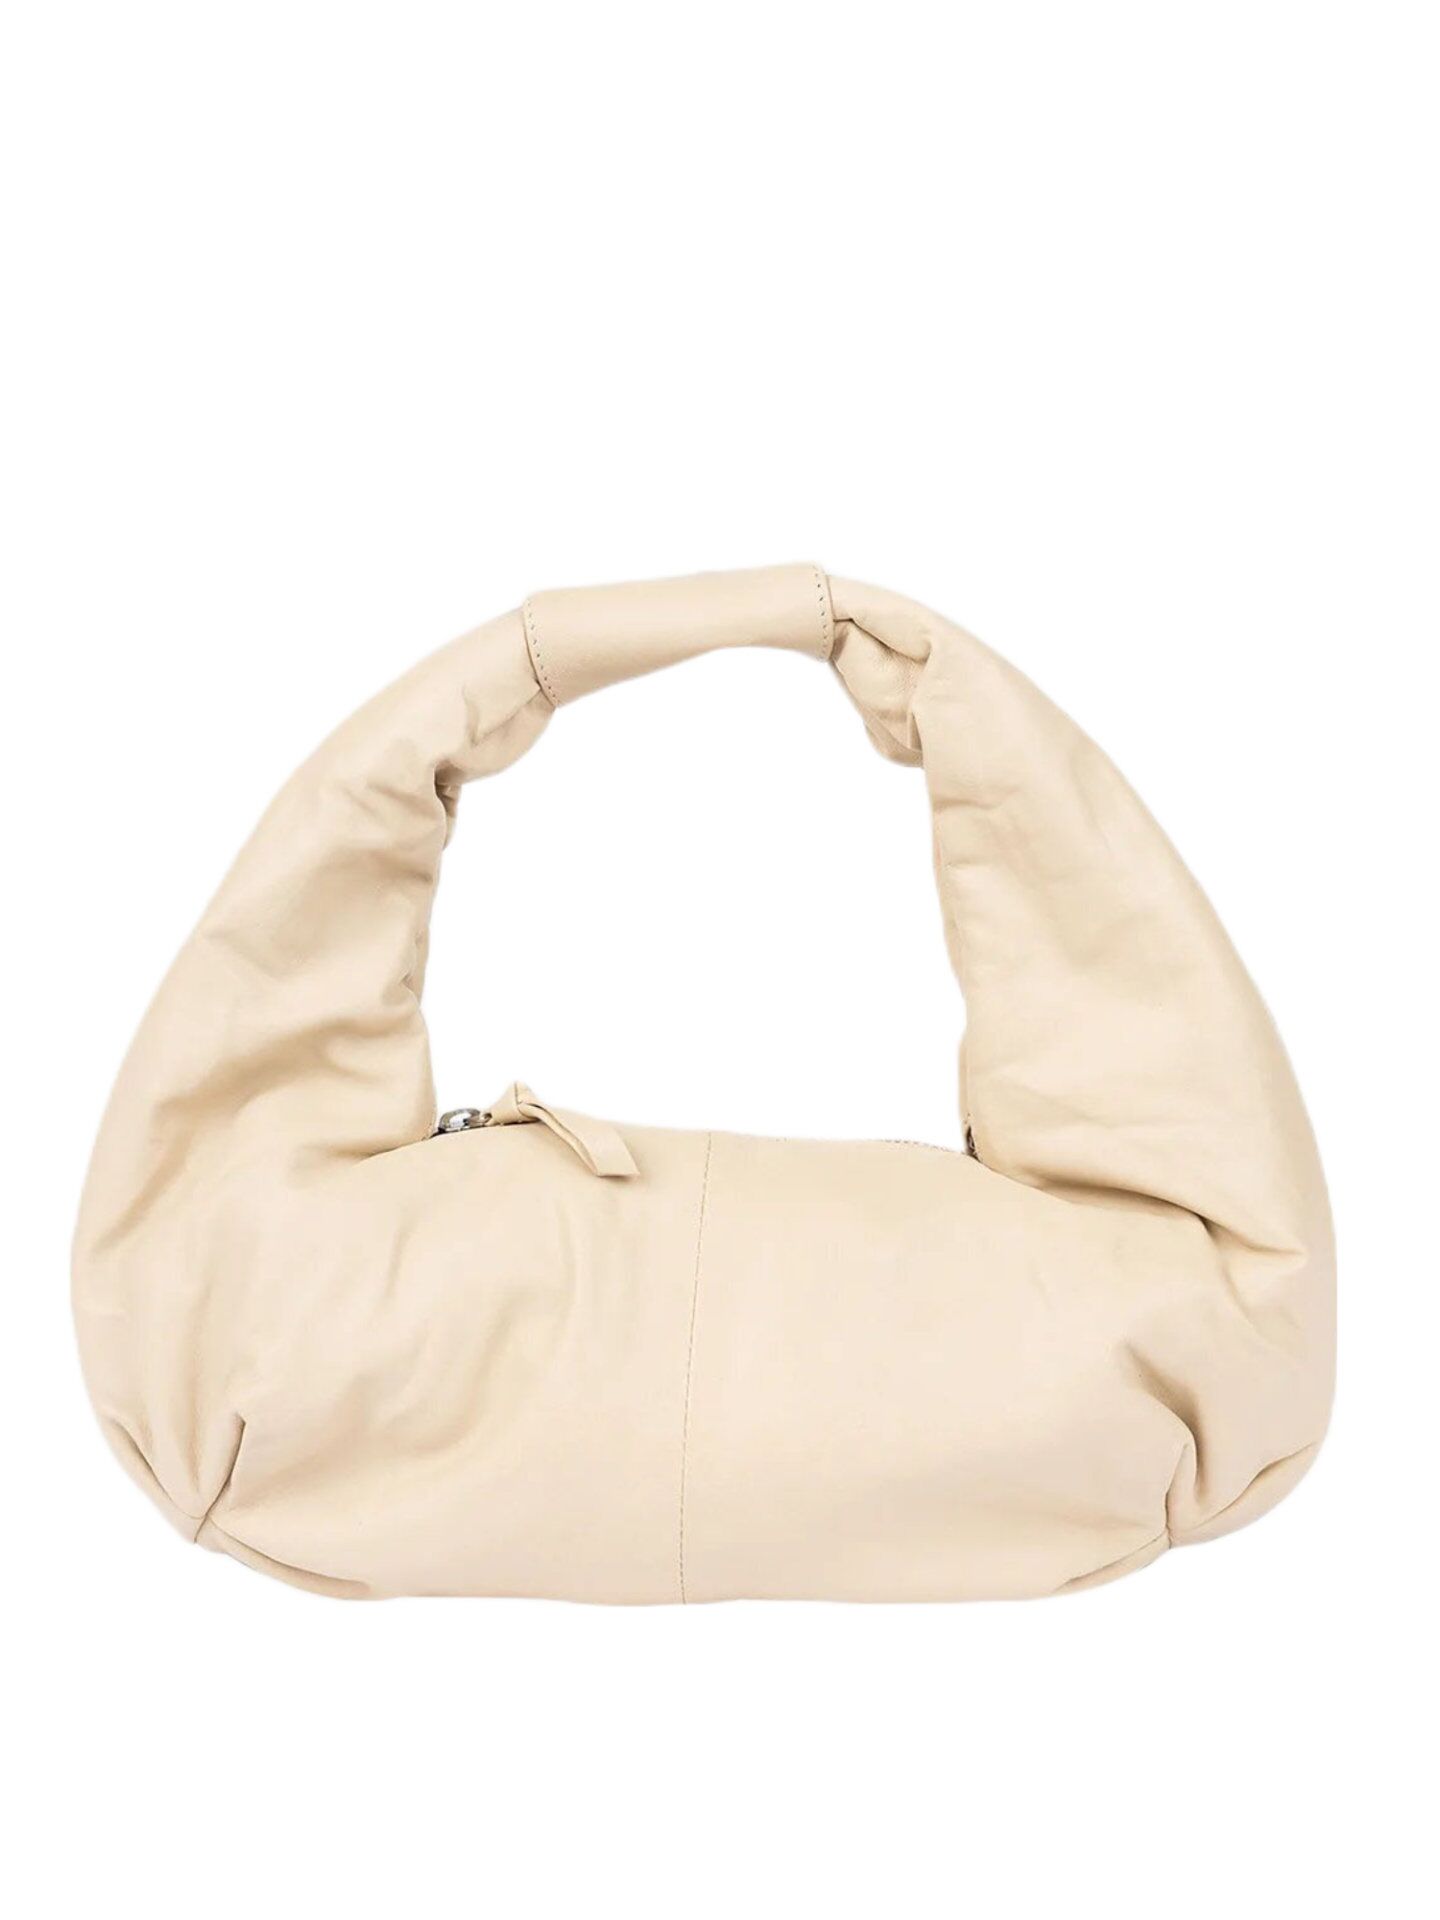 Stylism Tasche Bag Beige 017 (1)